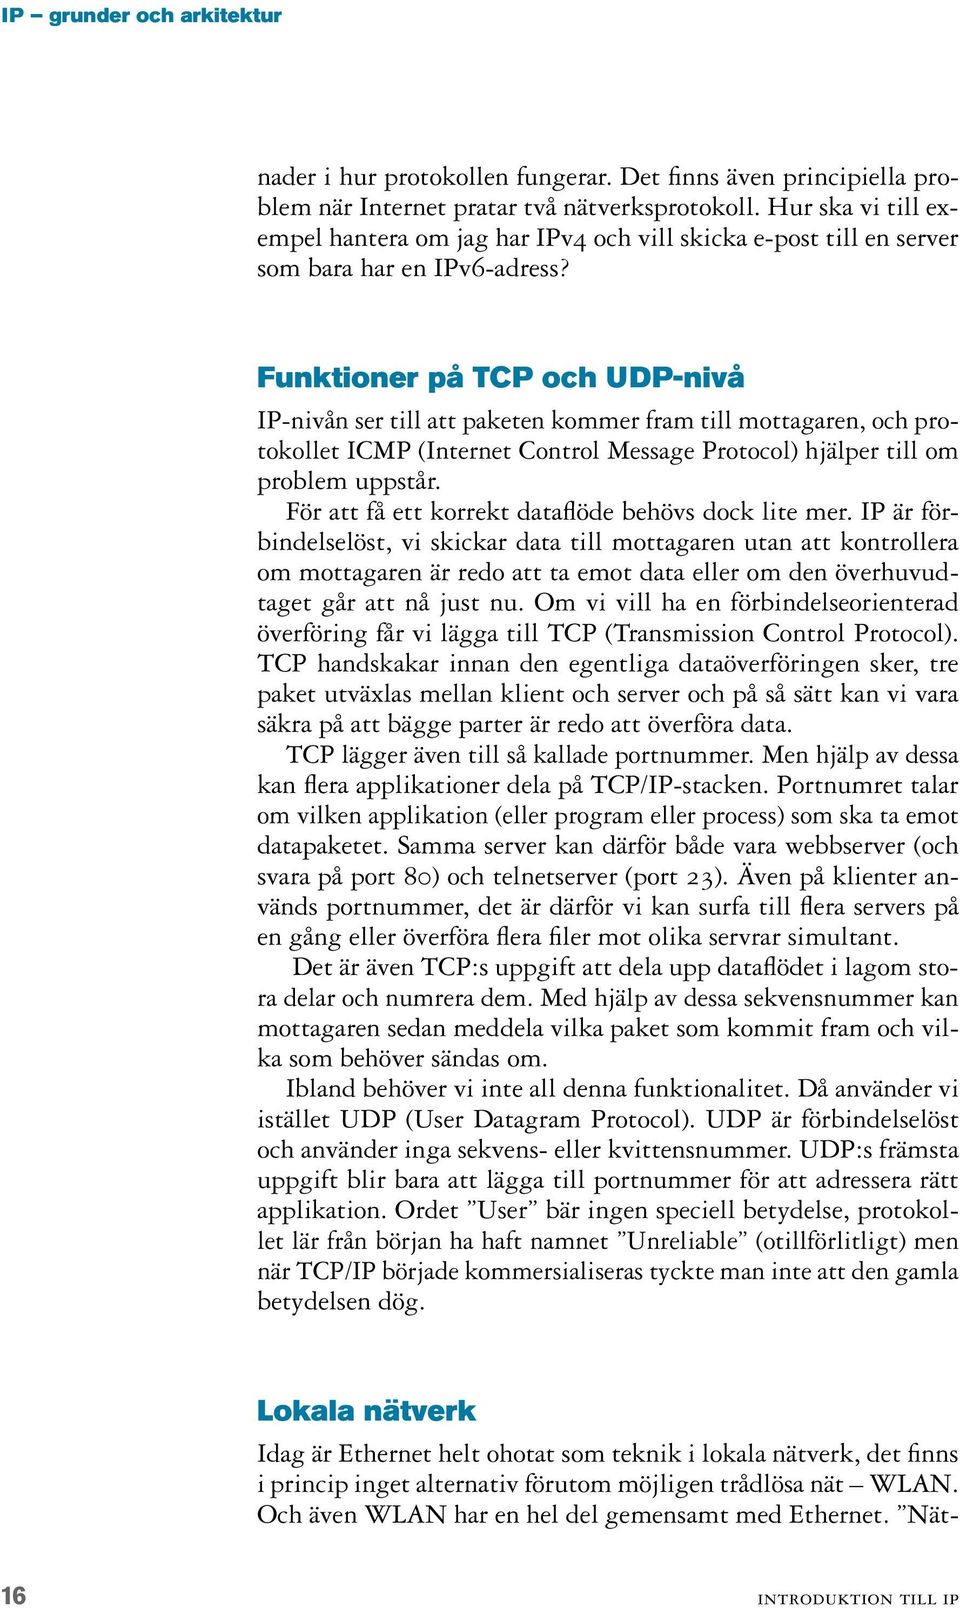 Funktioner på TCP och UDP-nivå IP-nivån ser till att paketen kommer fram till mottagaren, och protokollet ICMP (Internet Control Message Protocol) hjälper till om problem uppstår.